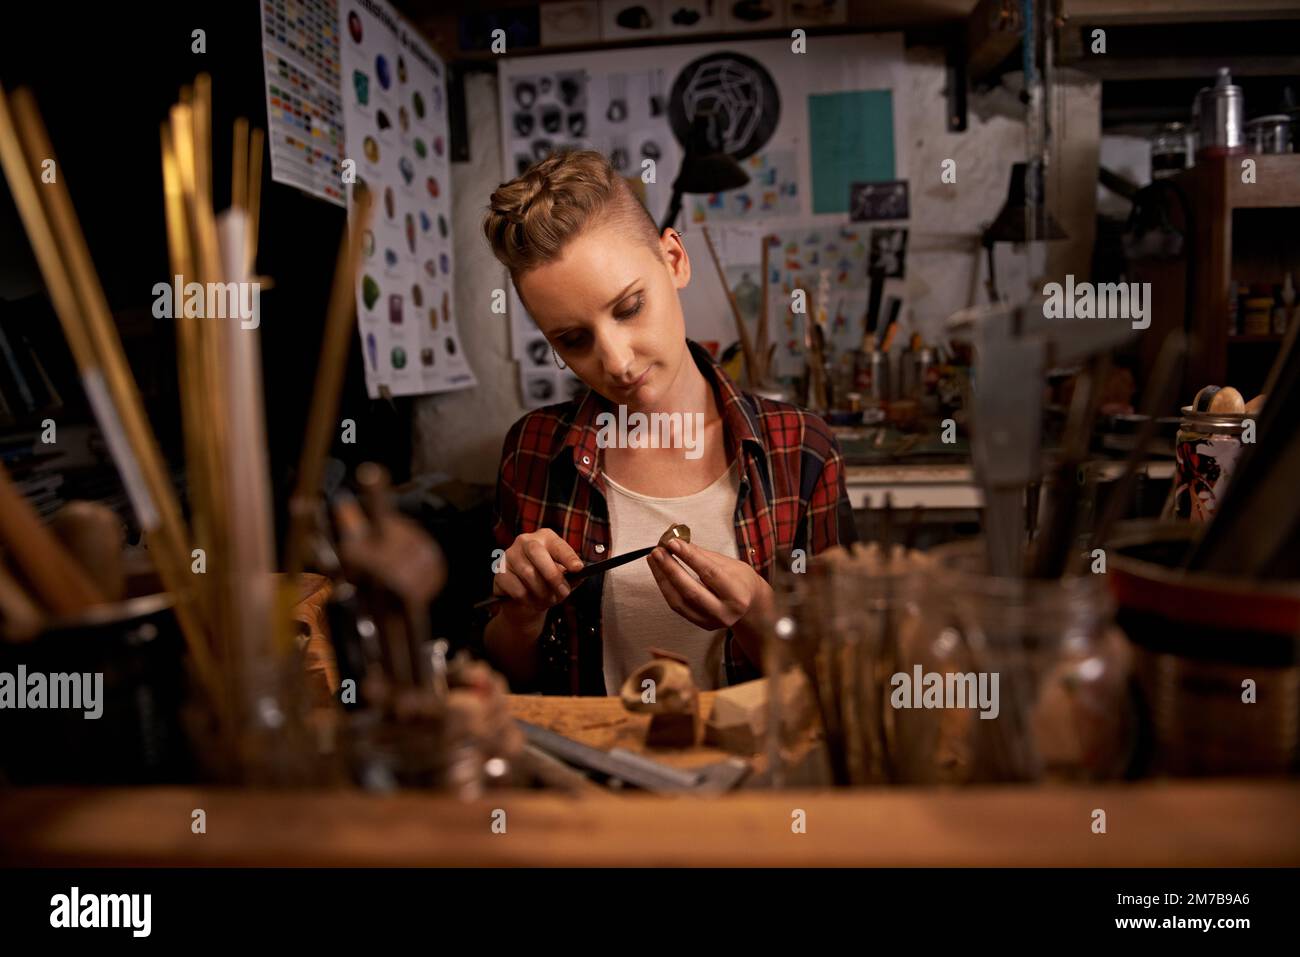 Lorsque la vie vous donne les mains, FAITES. Une jeune femme travaillant avec des outils dans un poste de travail en bois. Banque D'Images